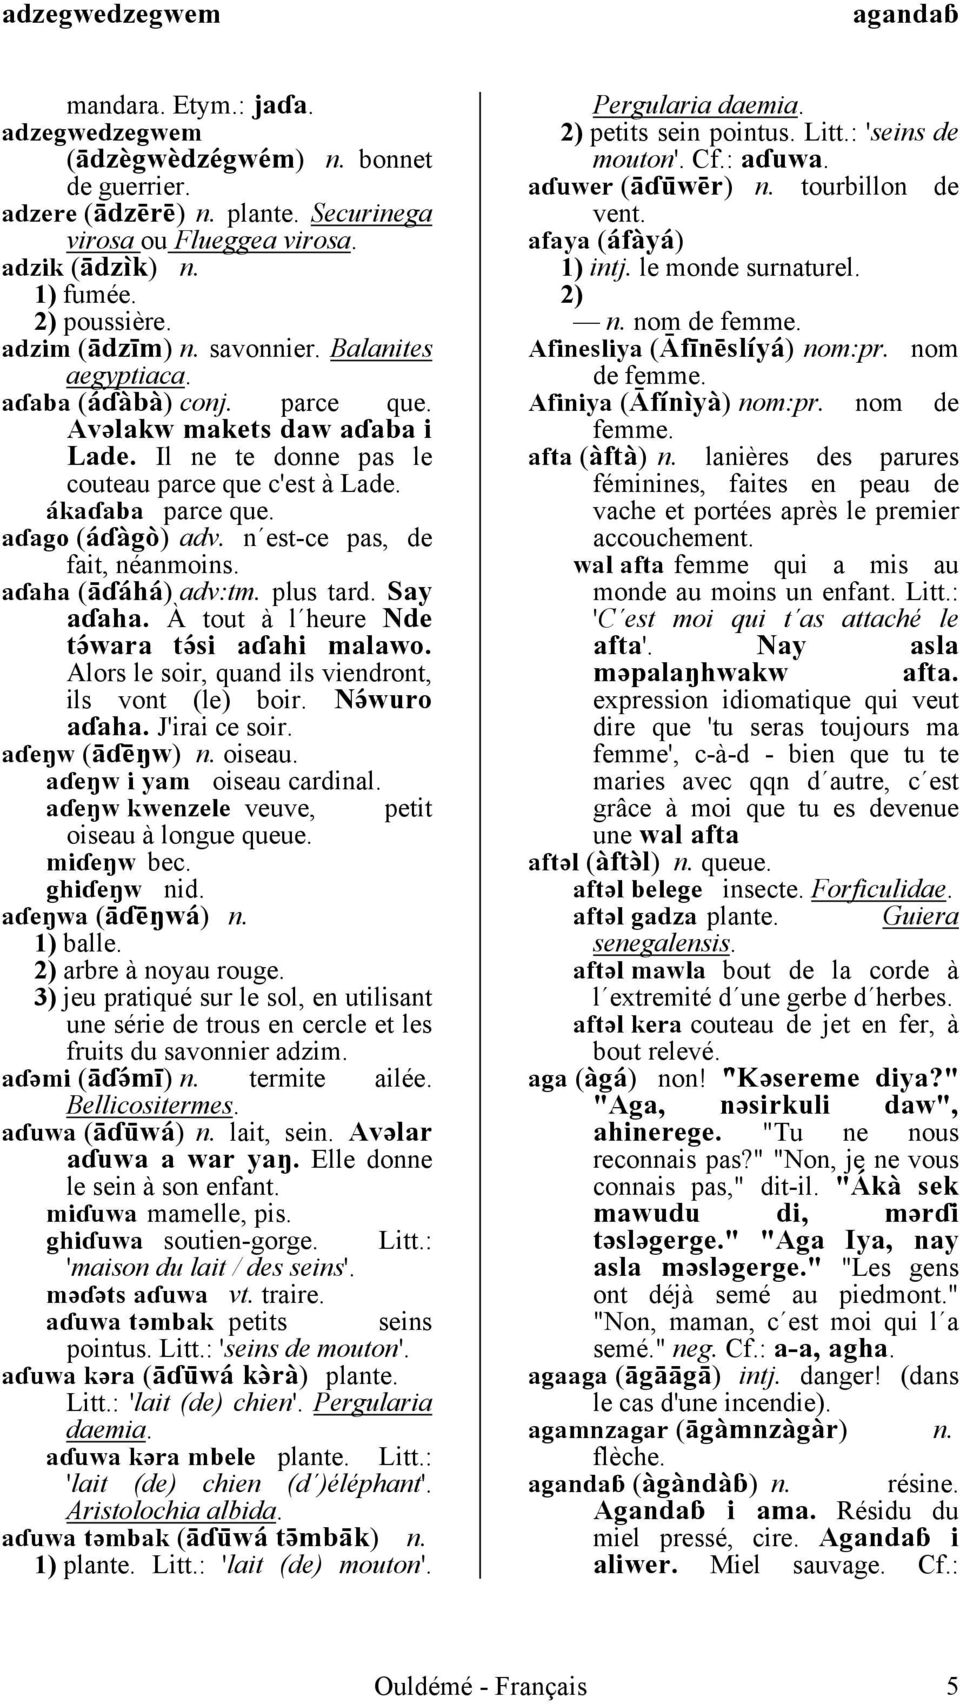 Dictionnaire Ouldeme Francais Pdf Telechargement Gratuit